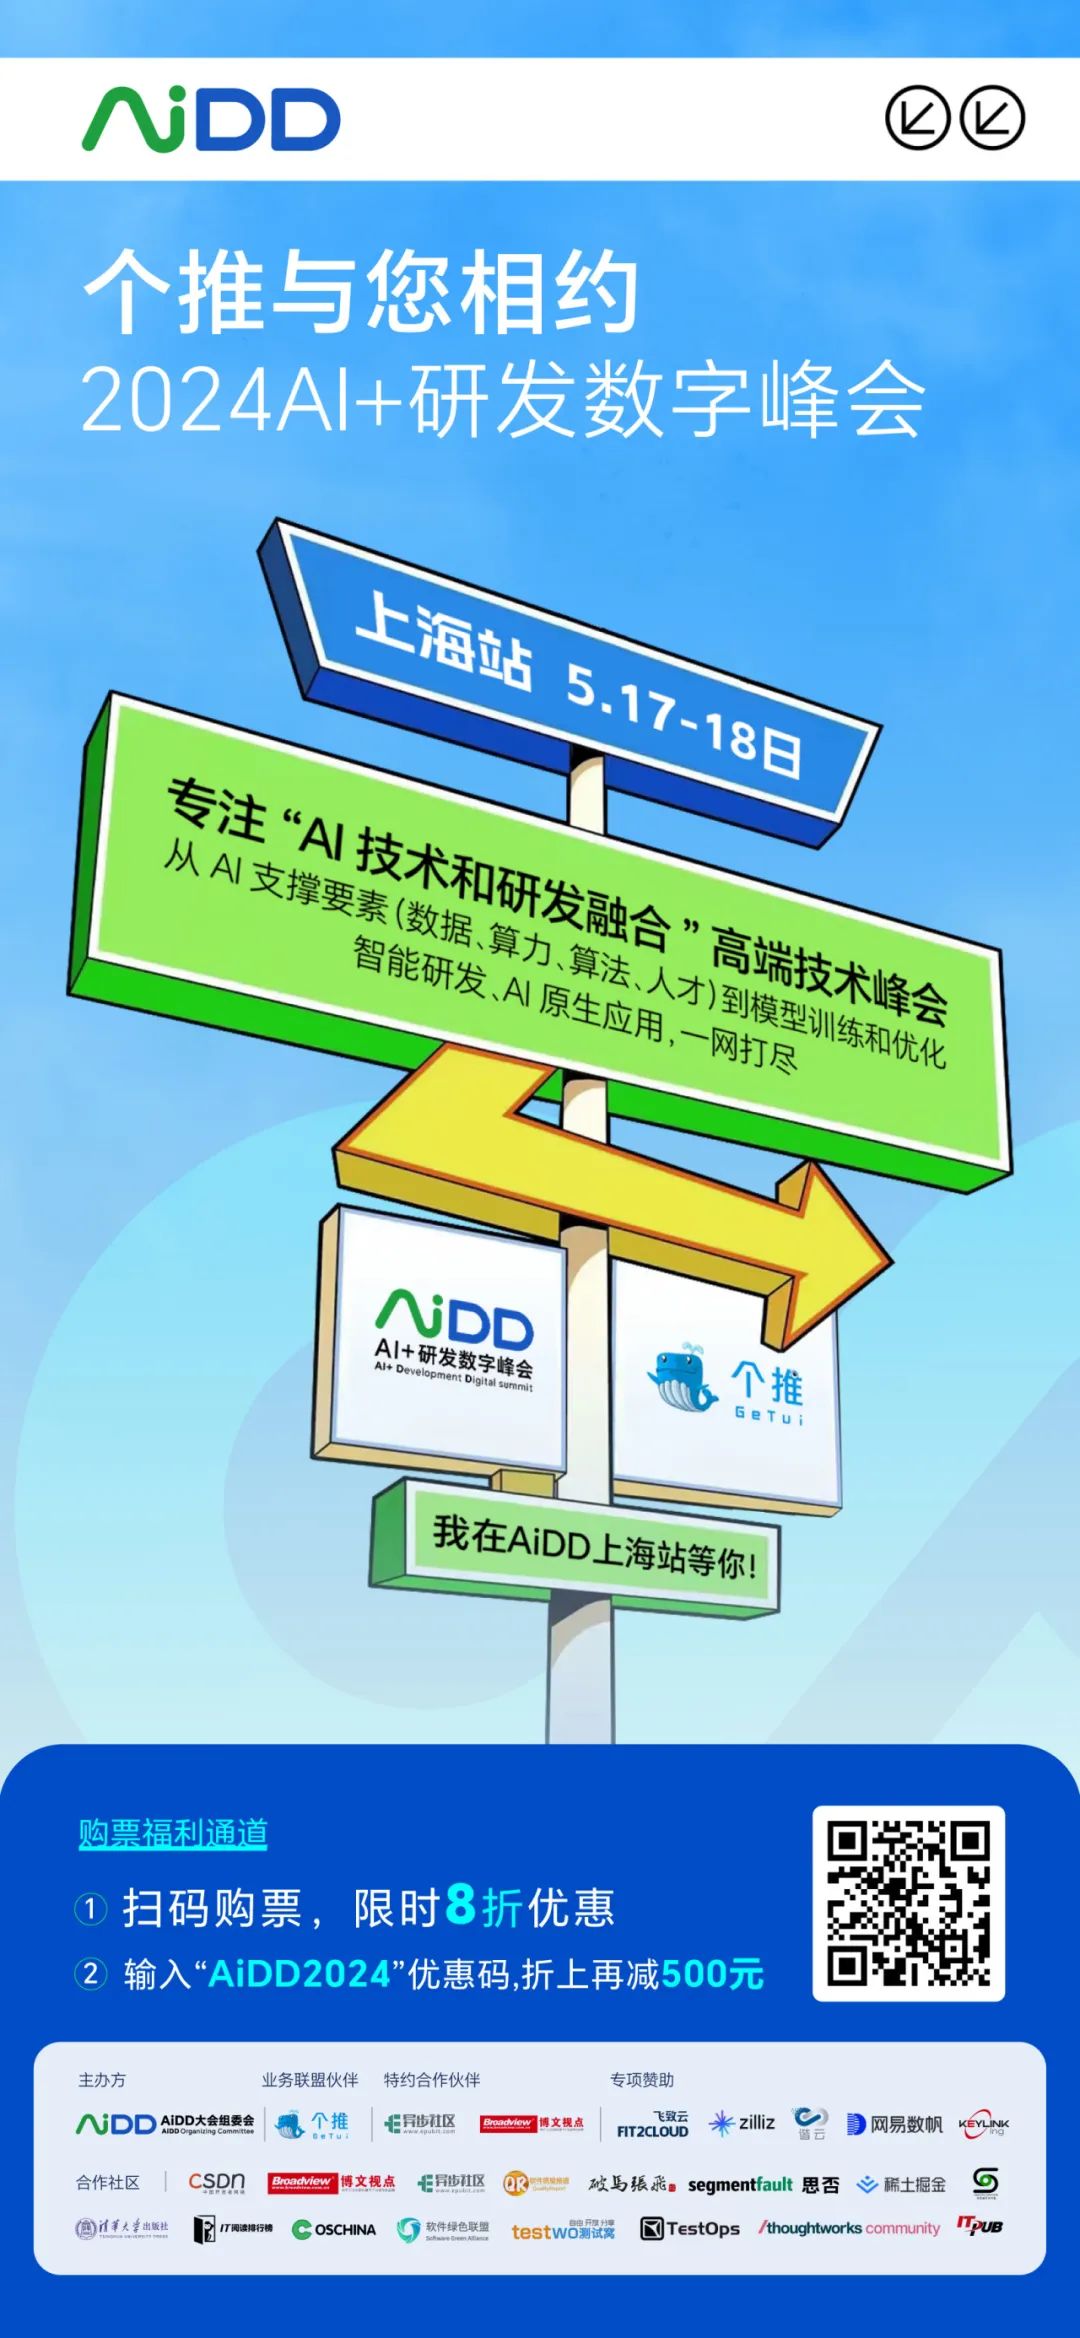 每日互动（个推）与您相约2024 AI+研发数字峰会（AiDD）上海站